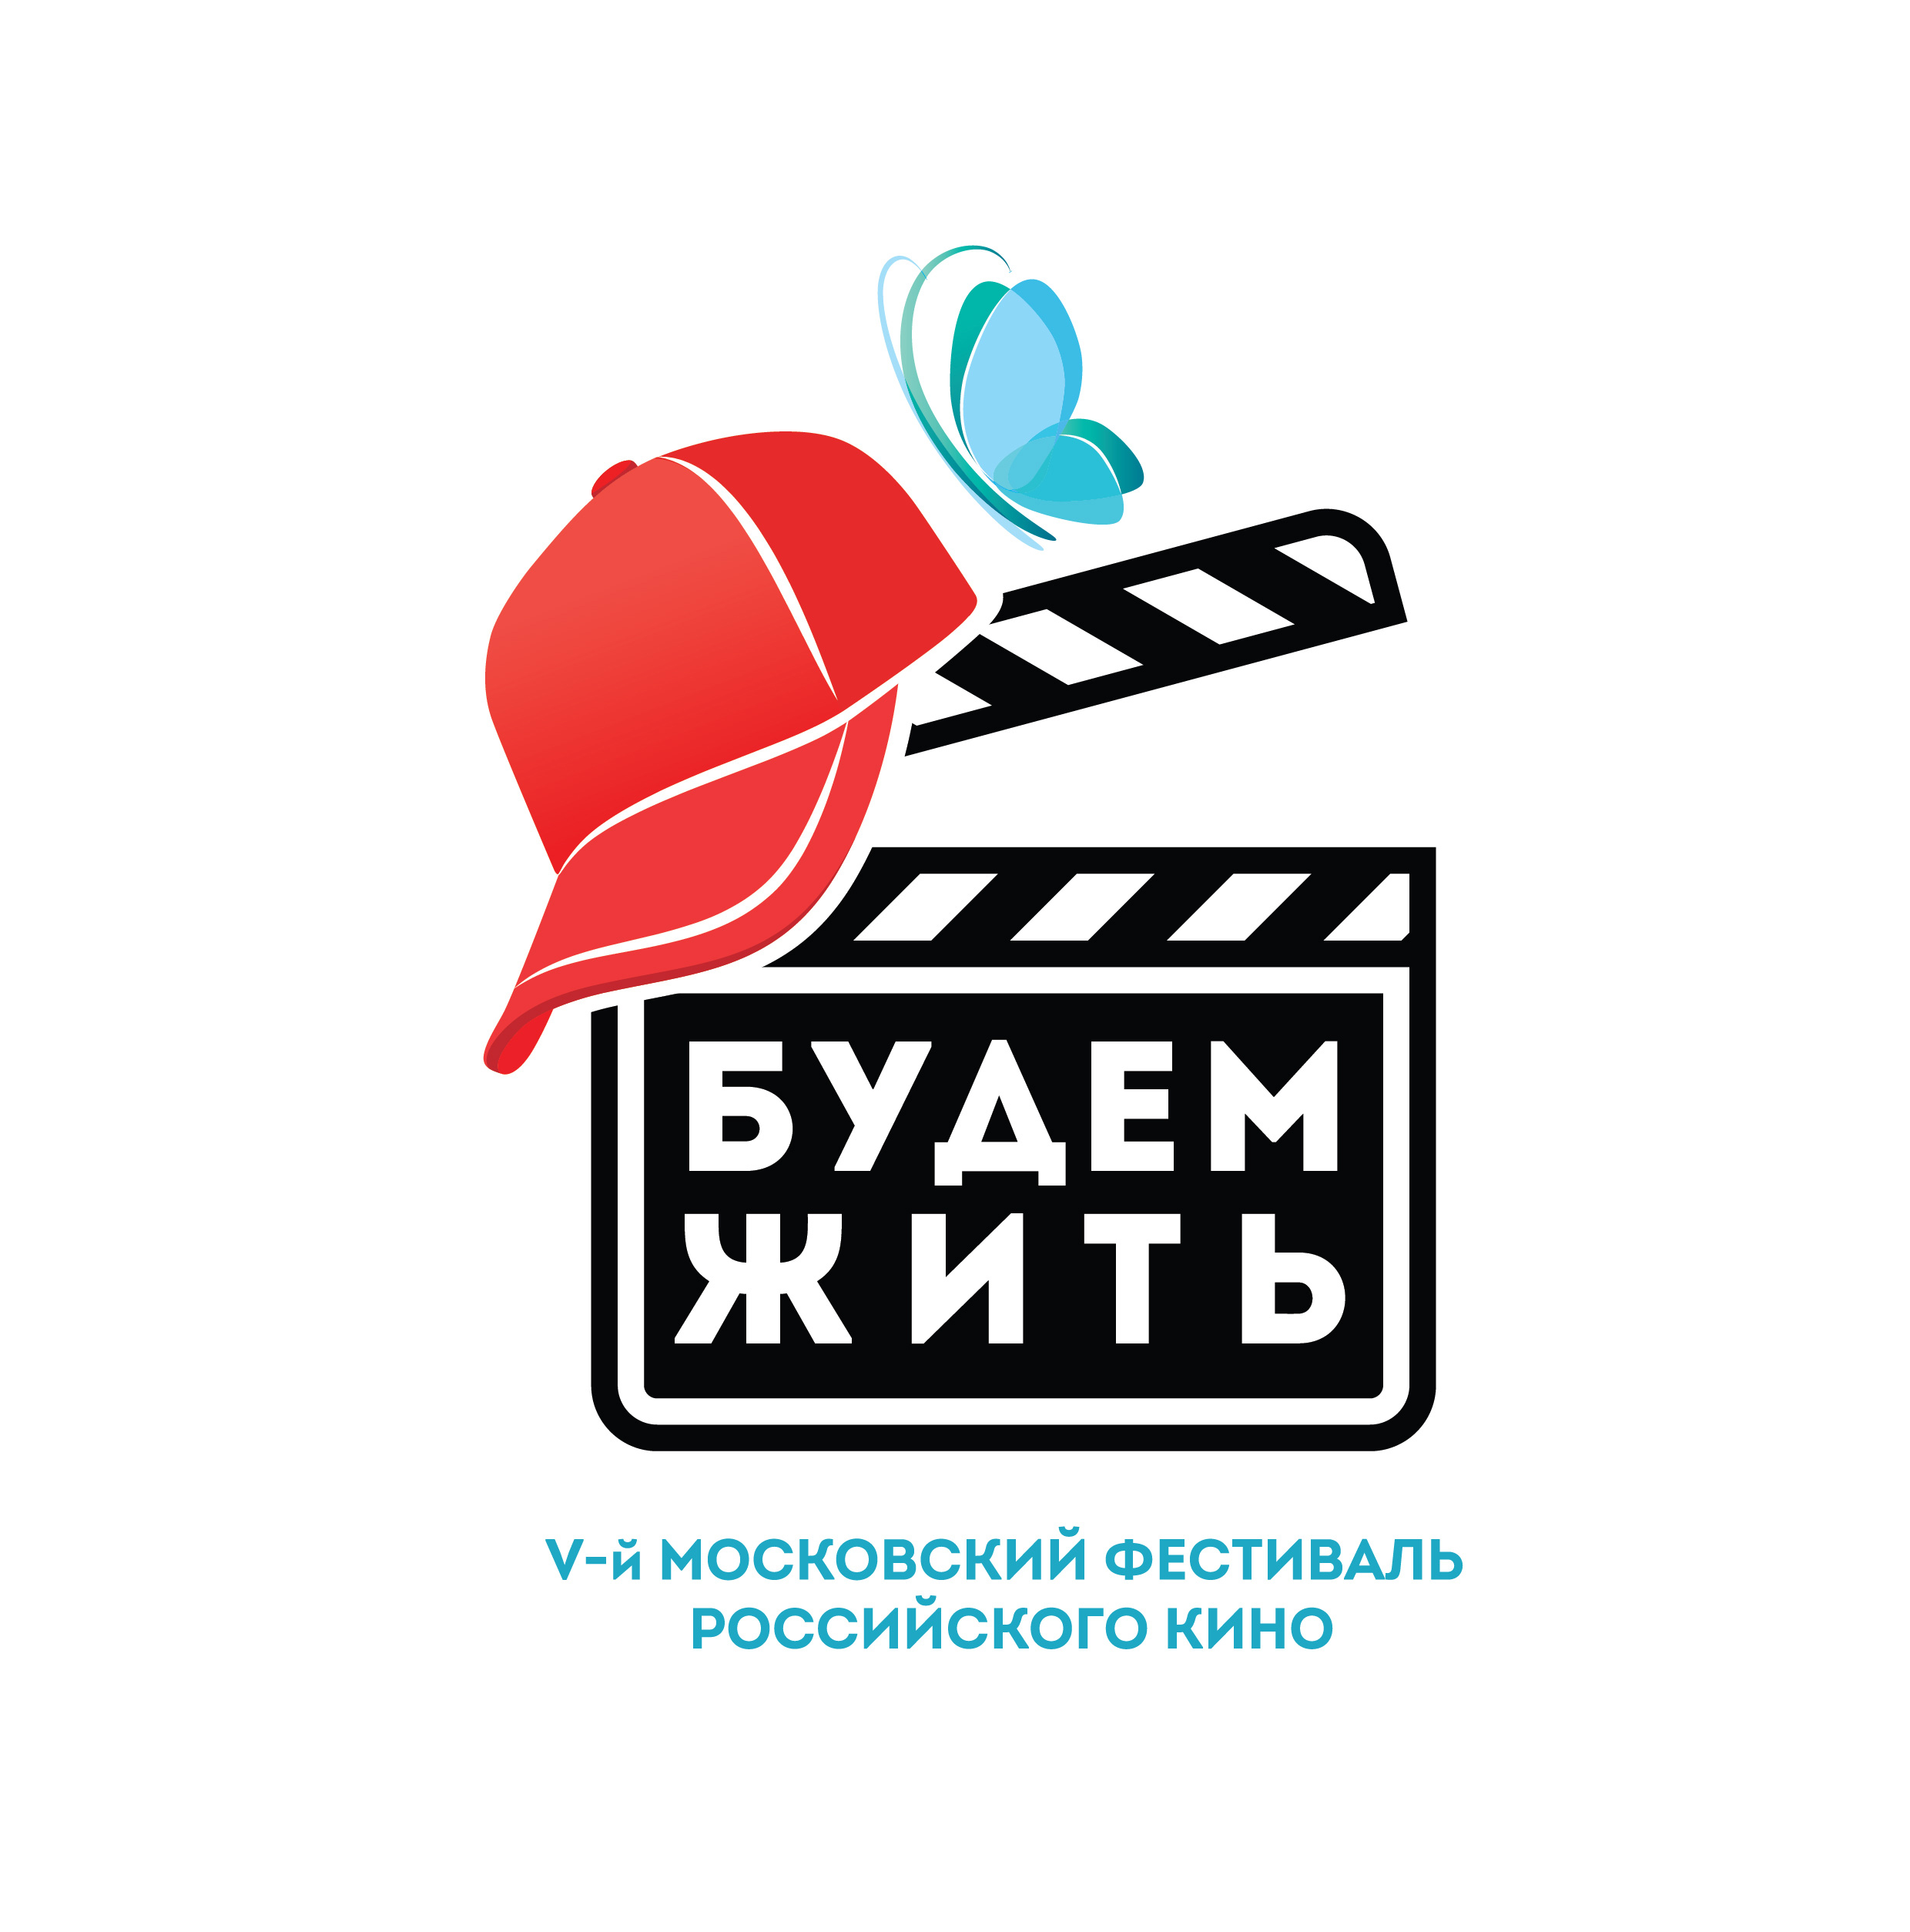 НФПП покажет документальный фильм на фестивале «Будем жить!» и наградит победителя киносмотра